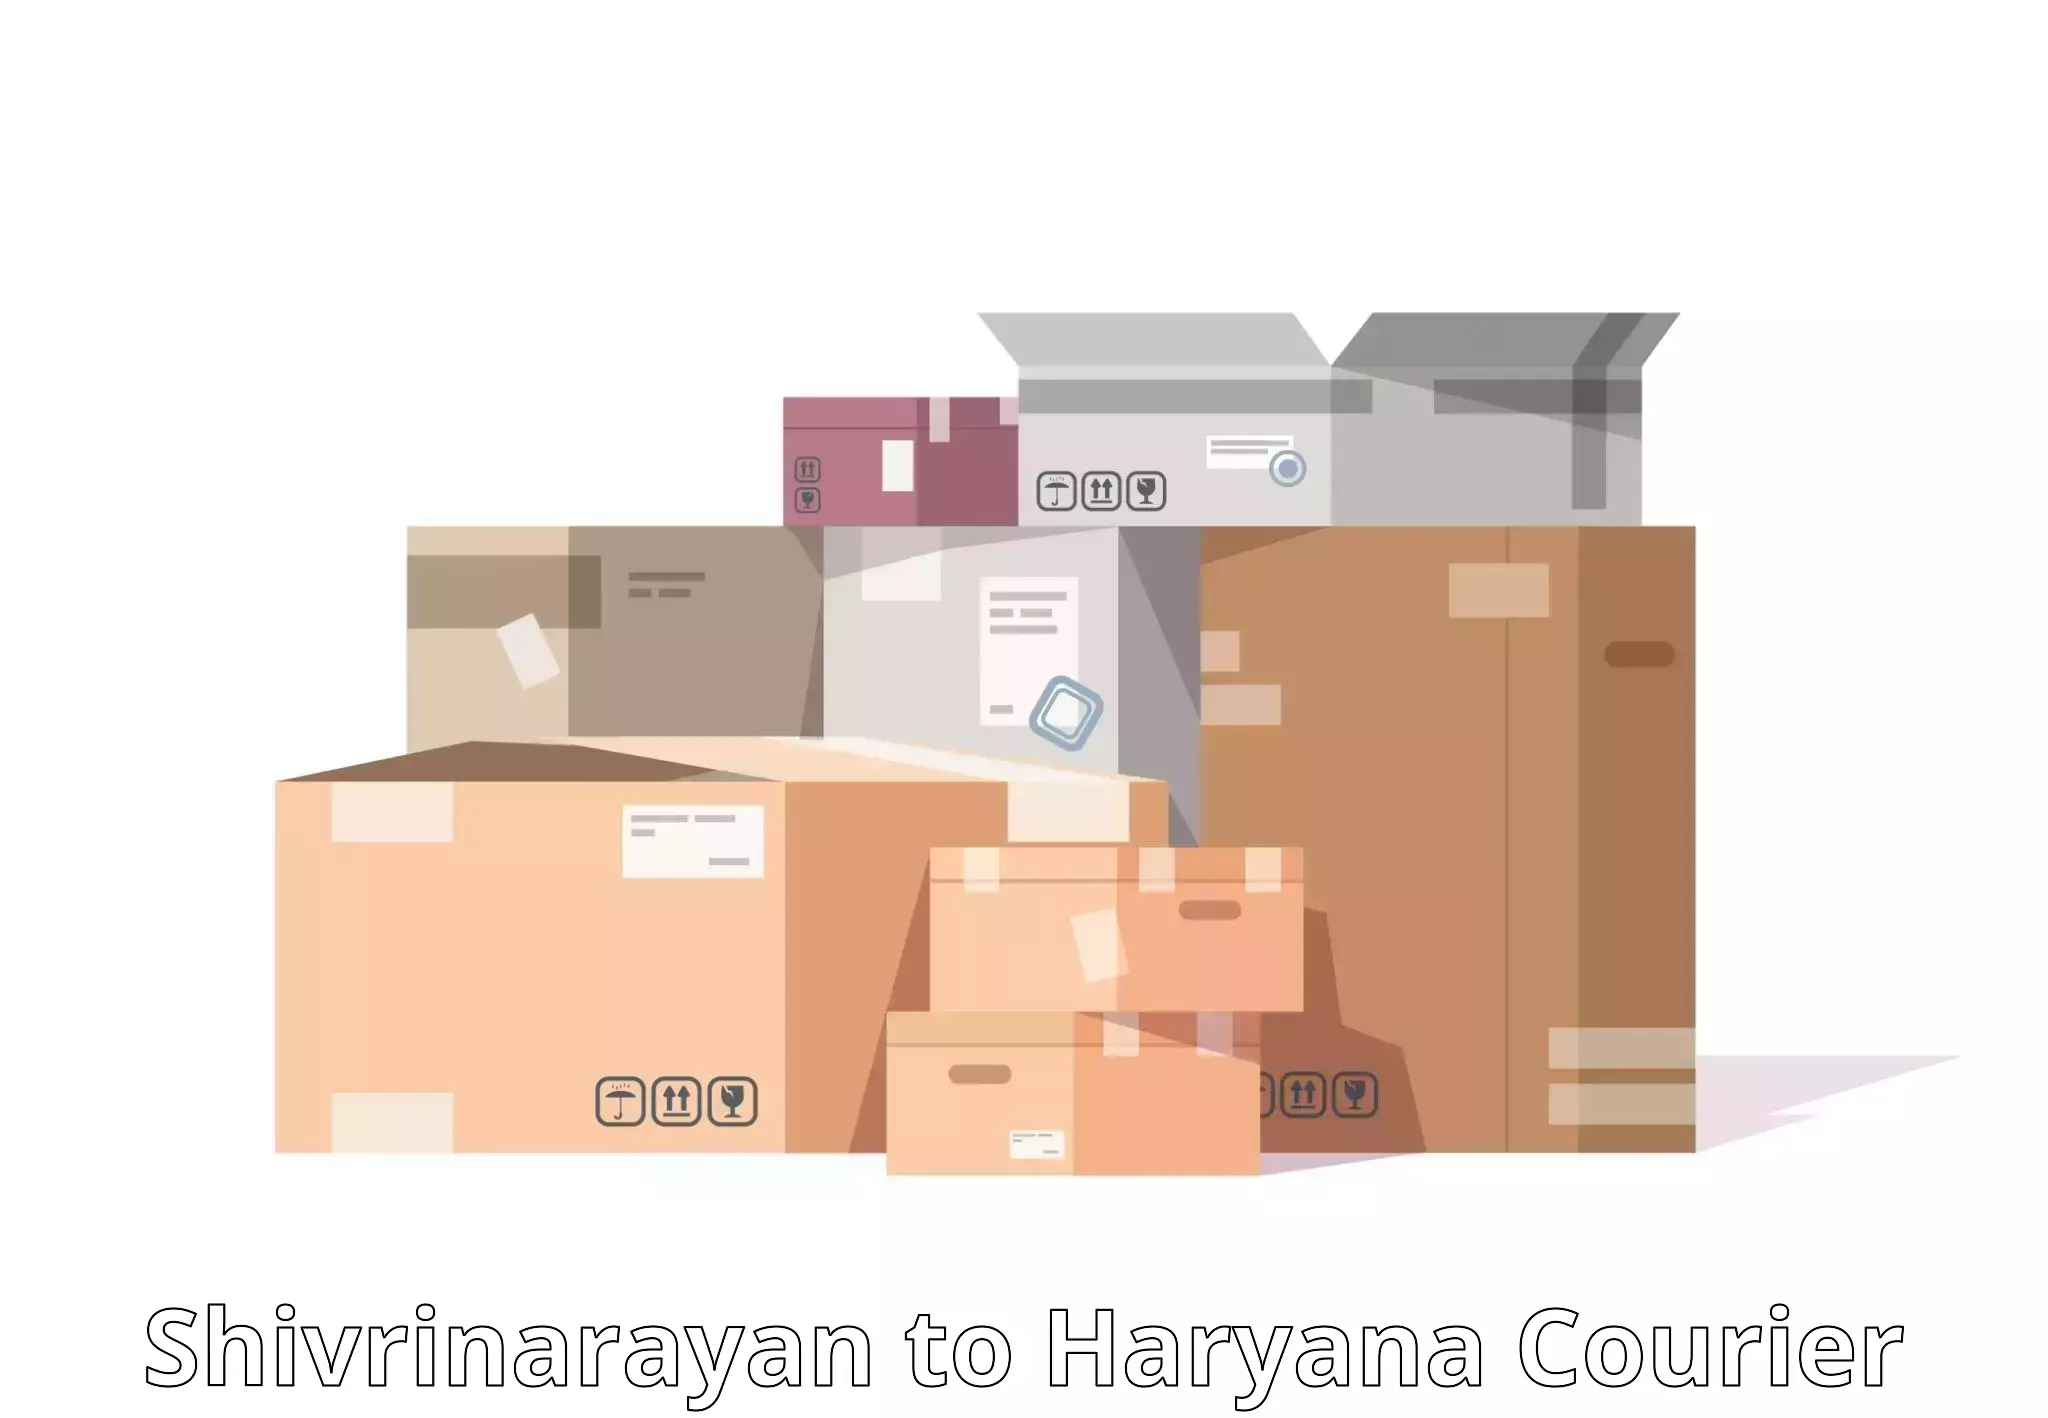 Long distance courier Shivrinarayan to Charkhi Dadri